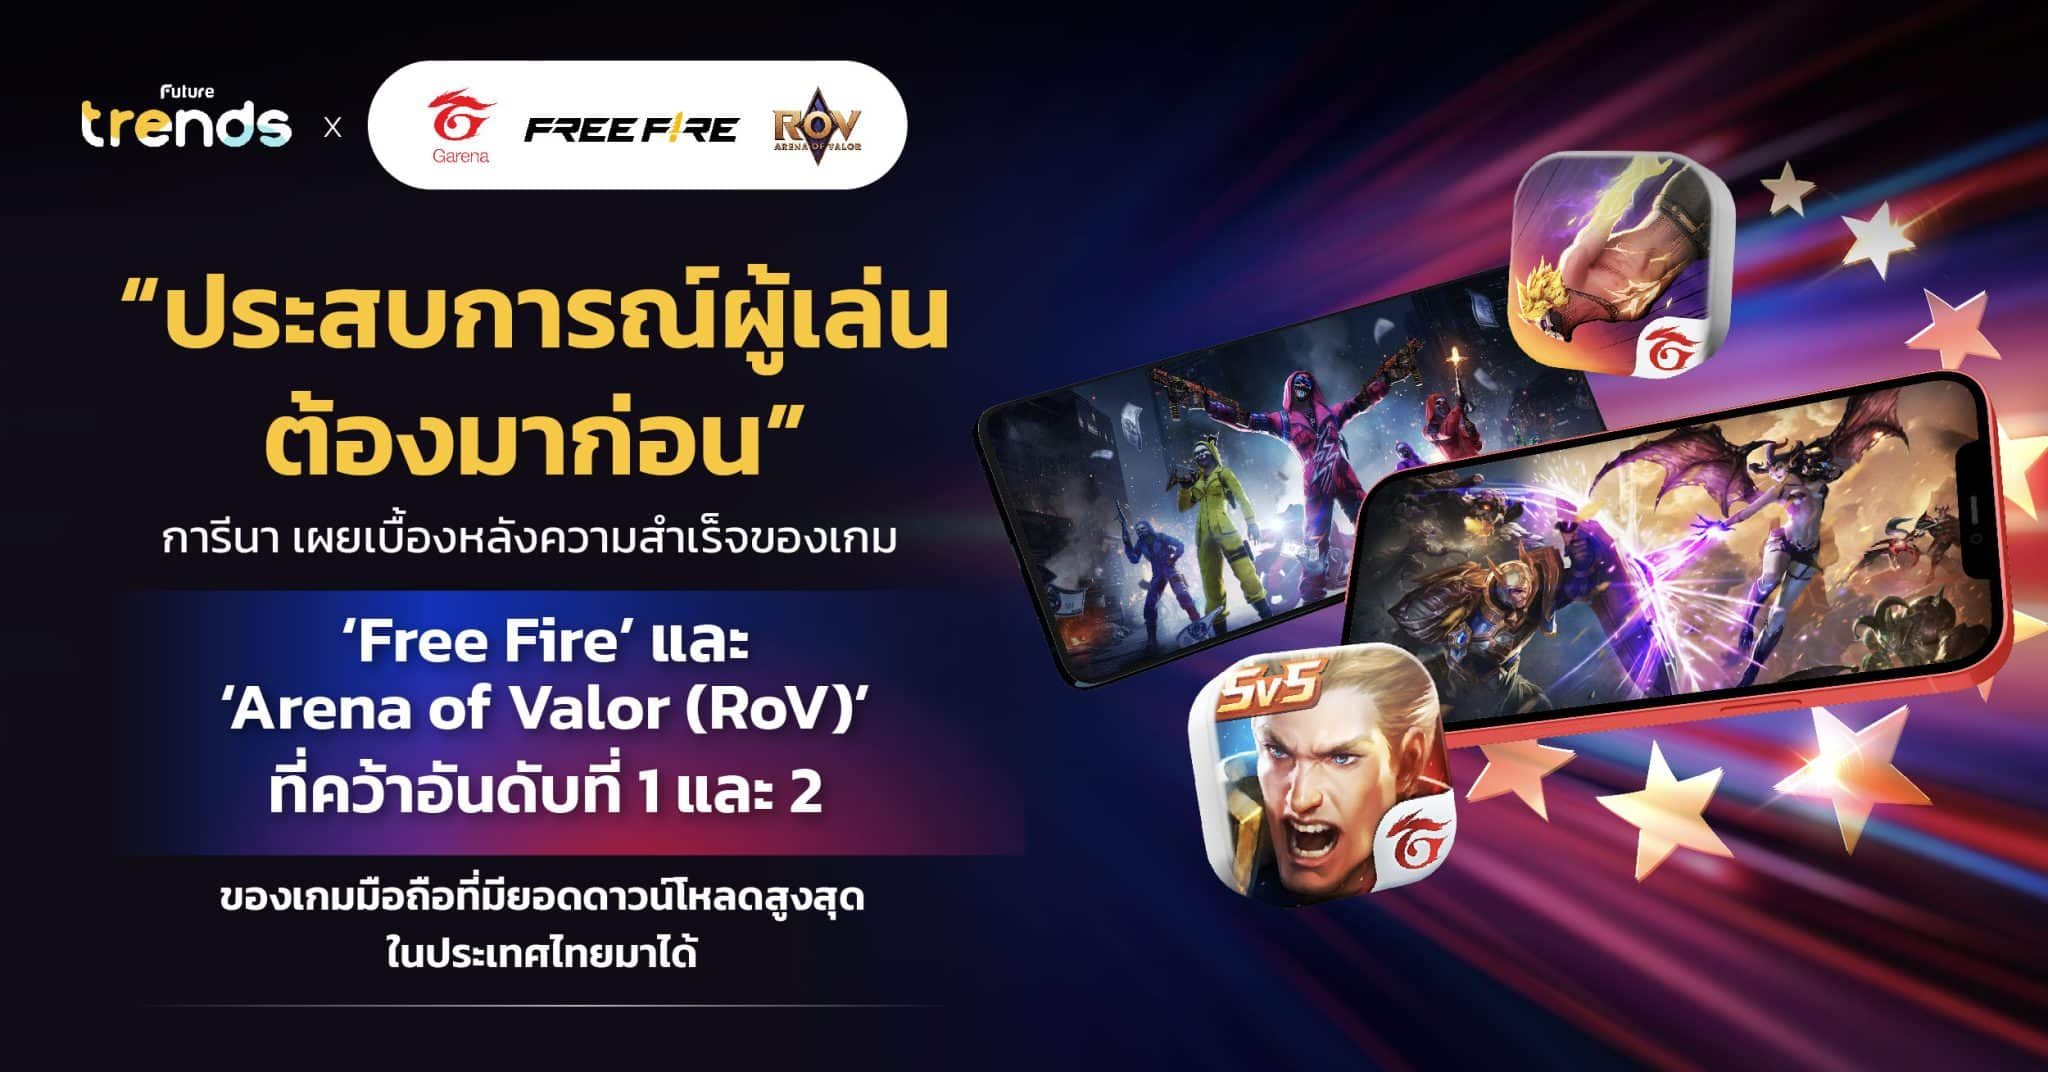 “ประสบการณ์ผู้เล่นต้องมาก่อน” การีนา เผยเบื้องหลังความสำเร็จของเกม ‘Free Fire’ และ ‘Arena of Valor (RoV)’ ที่คว้าอันดับที่ 1 และ 2 ของเกมมือถือที่มียอดดาวน์โหลดสูงสุดในประเทศไทยมาได้